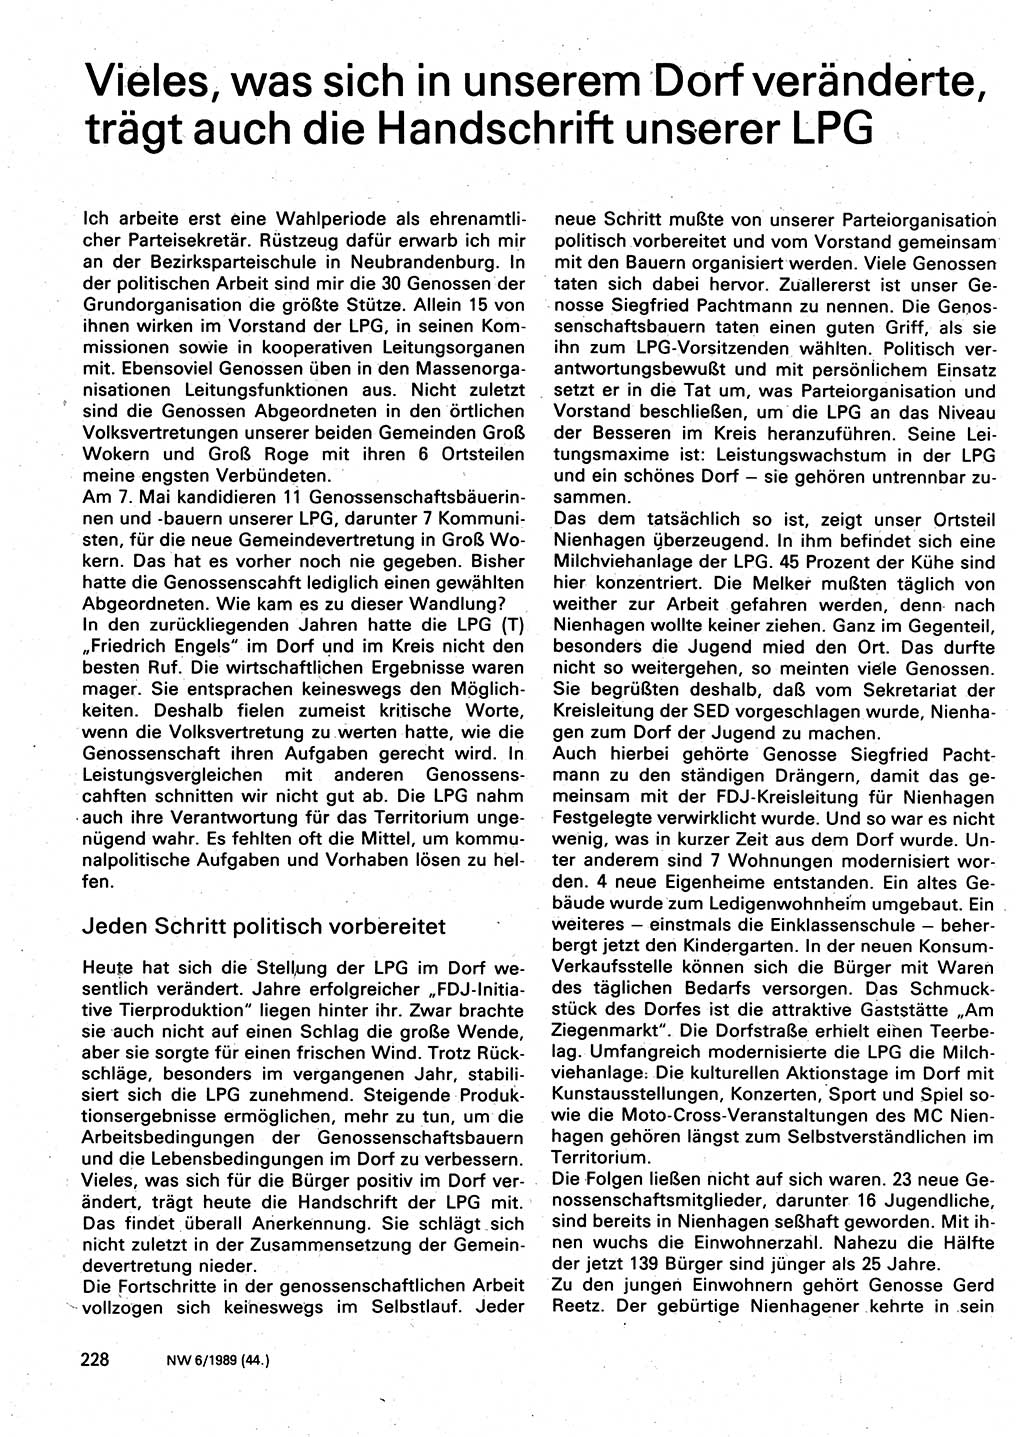 Neuer Weg (NW), Organ des Zentralkomitees (ZK) der SED (Sozialistische Einheitspartei Deutschlands) für Fragen des Parteilebens, 44. Jahrgang [Deutsche Demokratische Republik (DDR)] 1989, Seite 228 (NW ZK SED DDR 1989, S. 228)